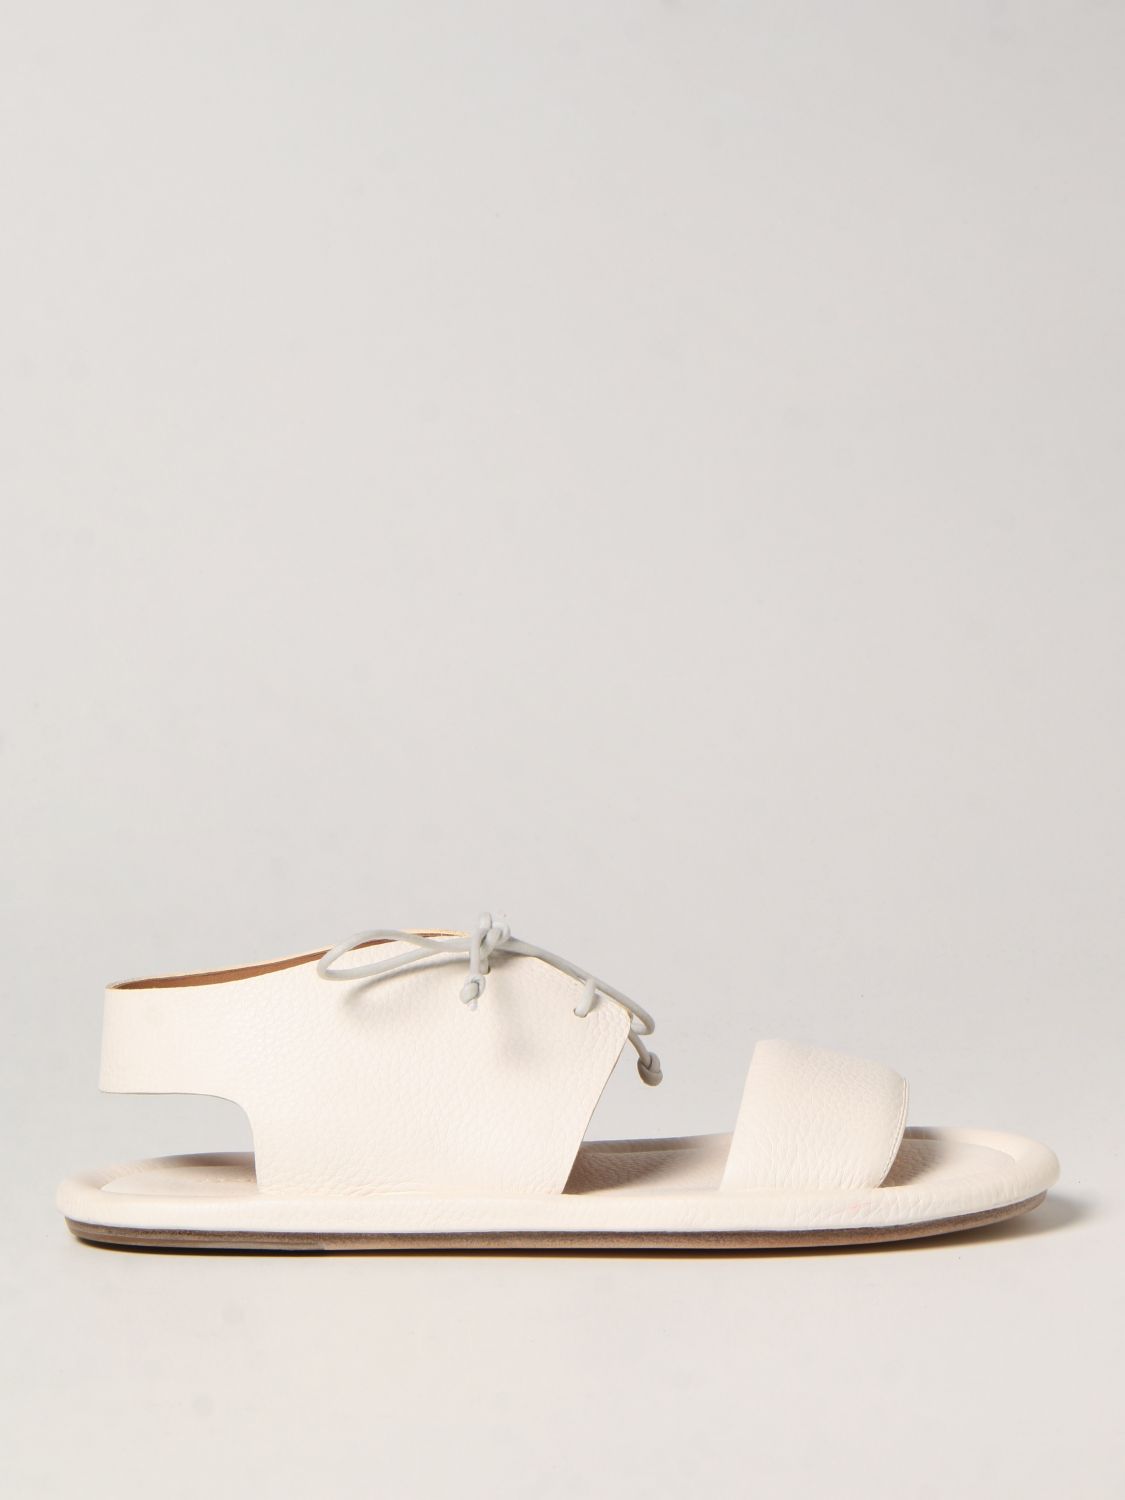 MARSÈLL: Cornice sandals in volonata leather - White | Marsèll sandals ...